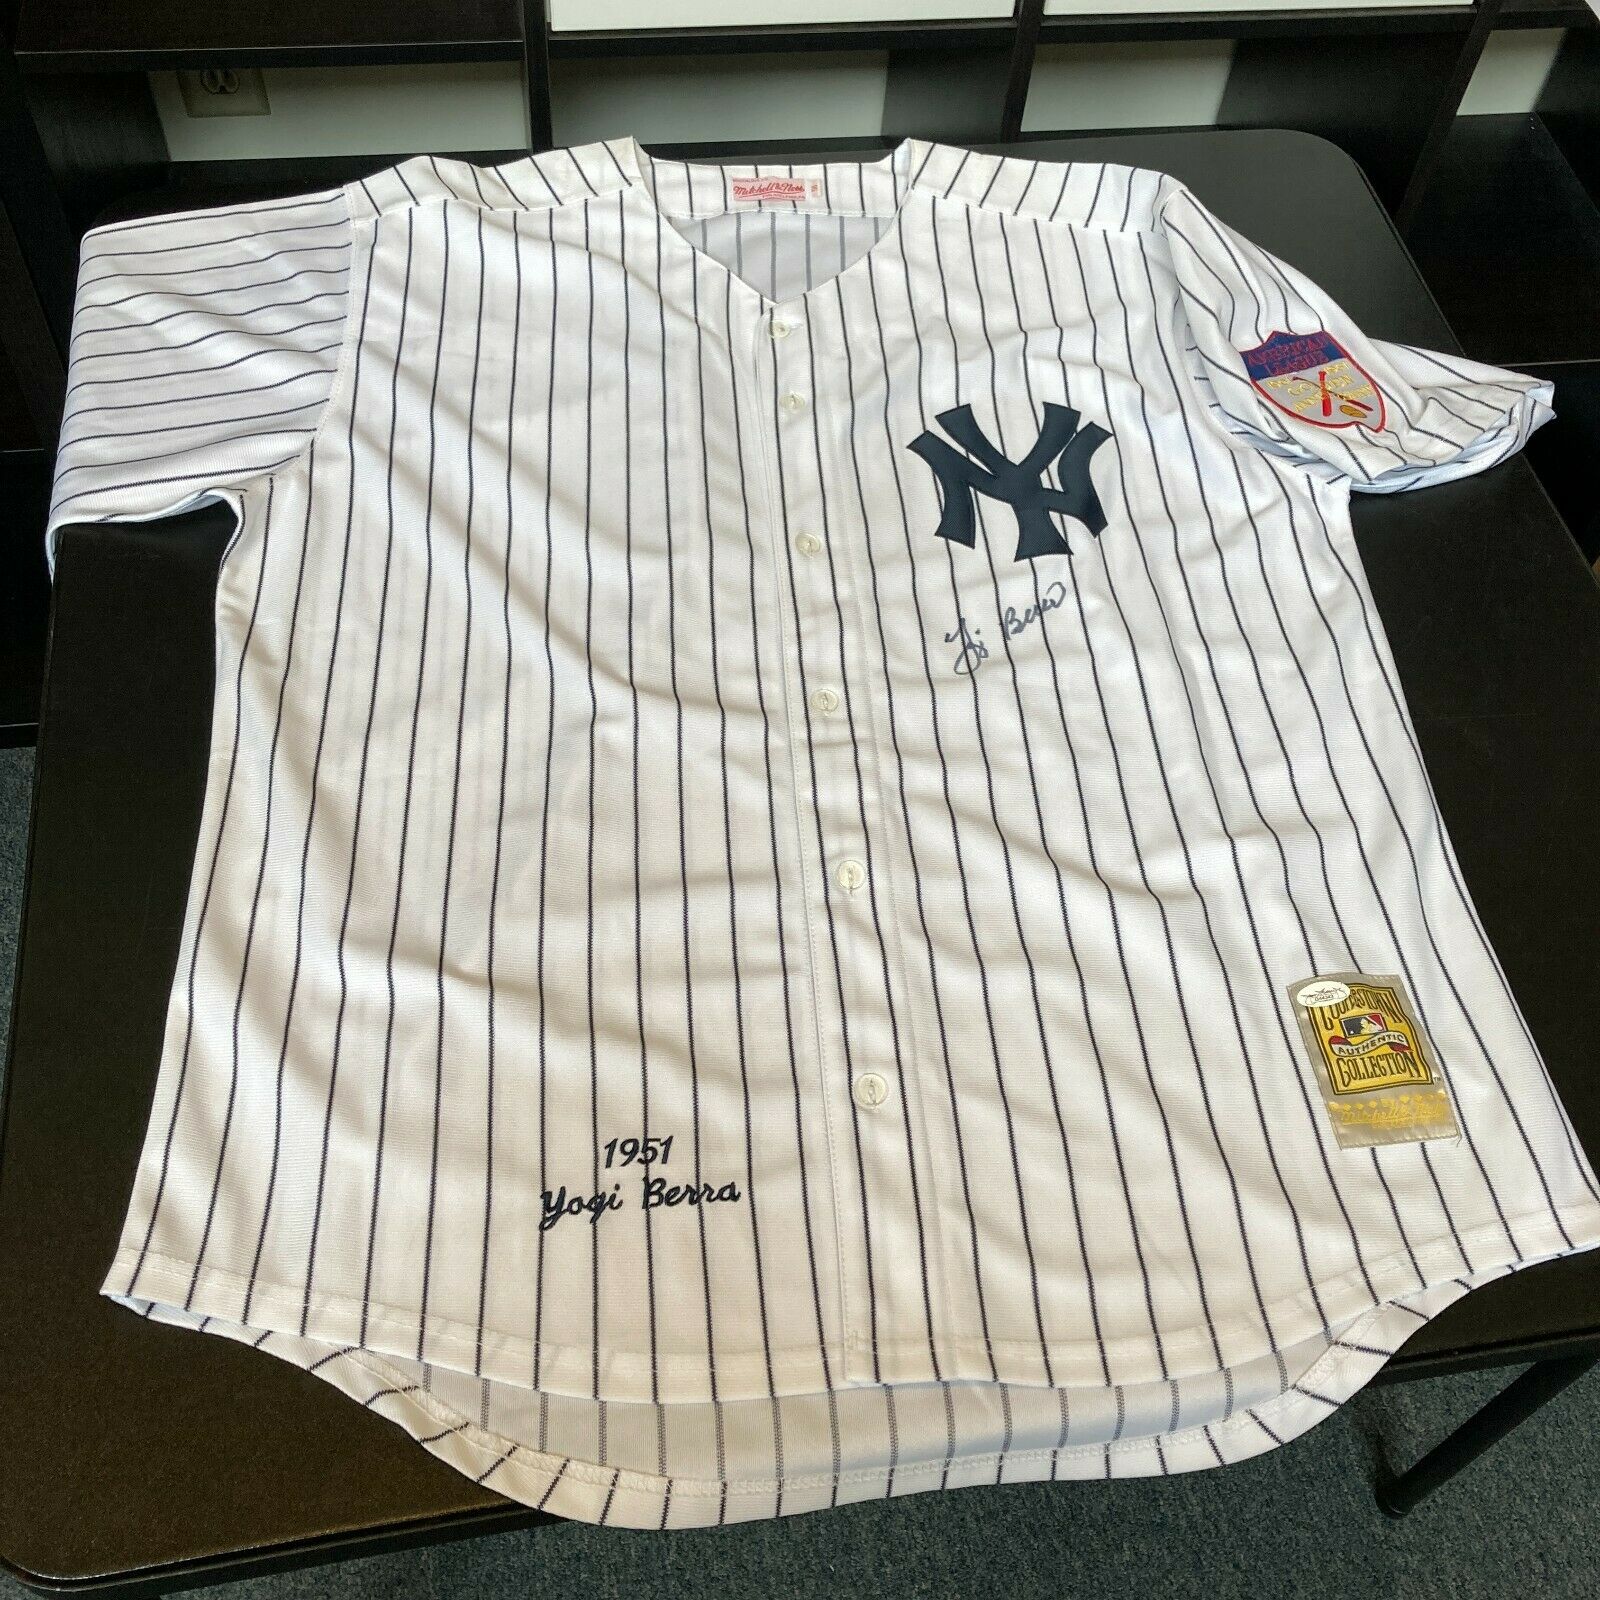 Yogi Berra Signed New York Yankees Mitchell & Ness Authentic